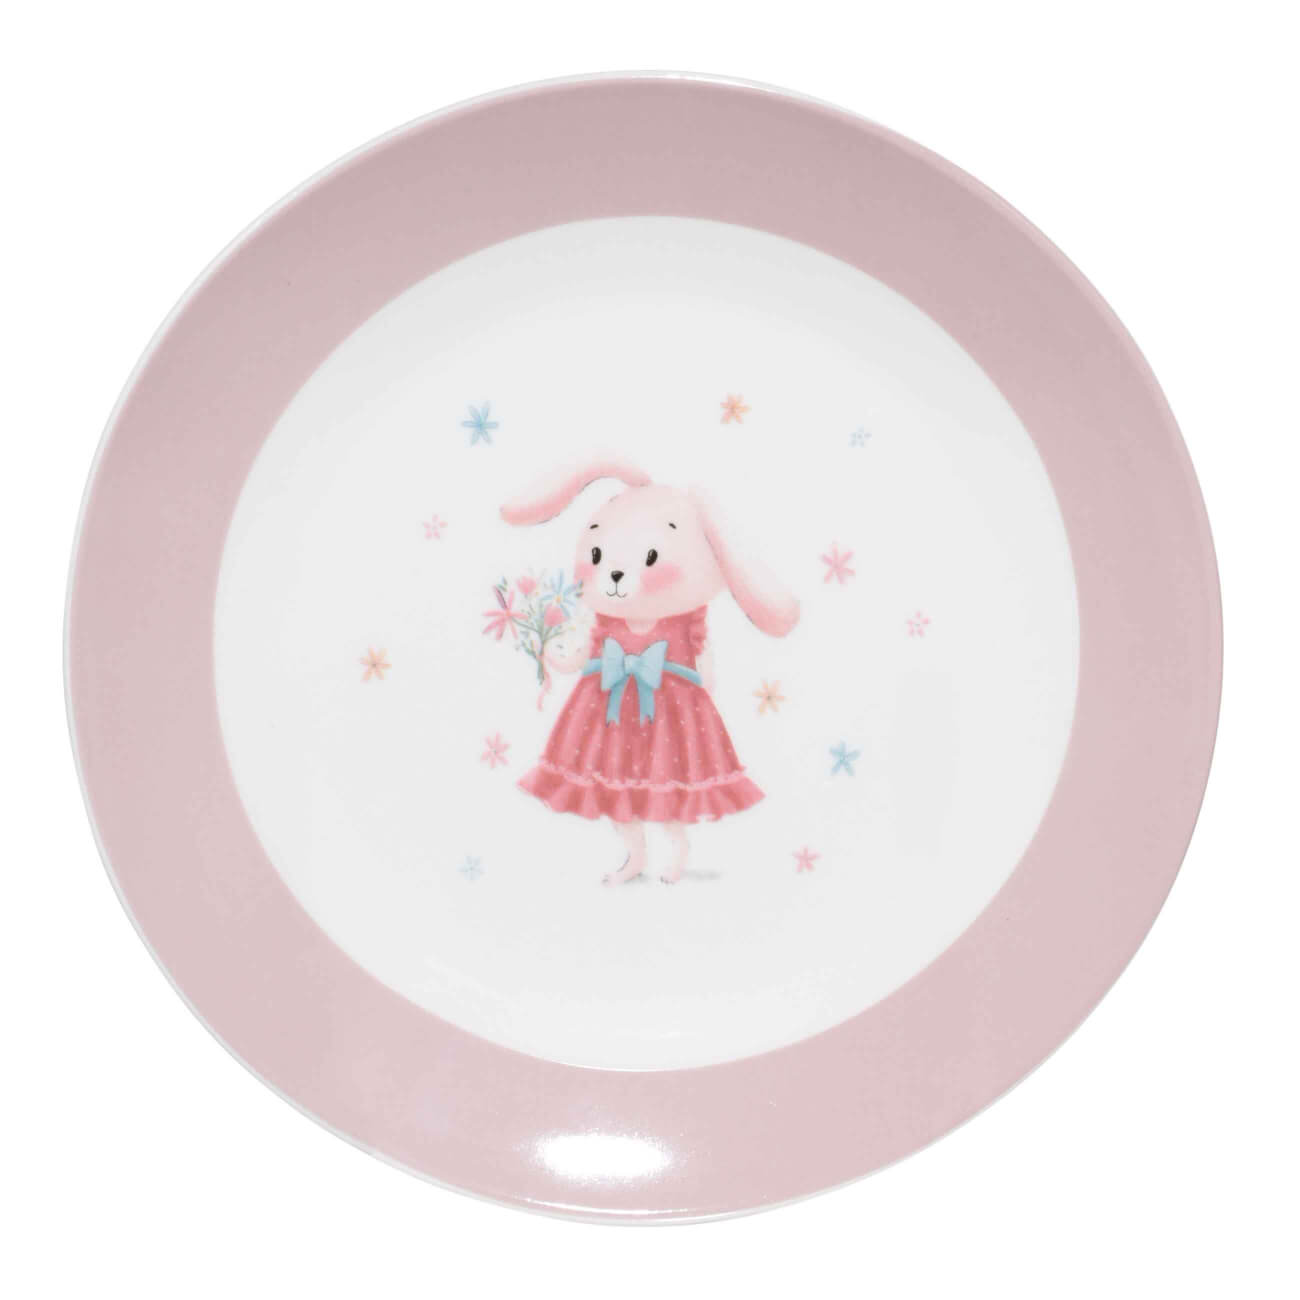 Тарелка закусочная, детская, 19 см, фарфор N, бело-розовая, Крольчиха с цветами, Ideas life глубокая детская тарелка пластишка